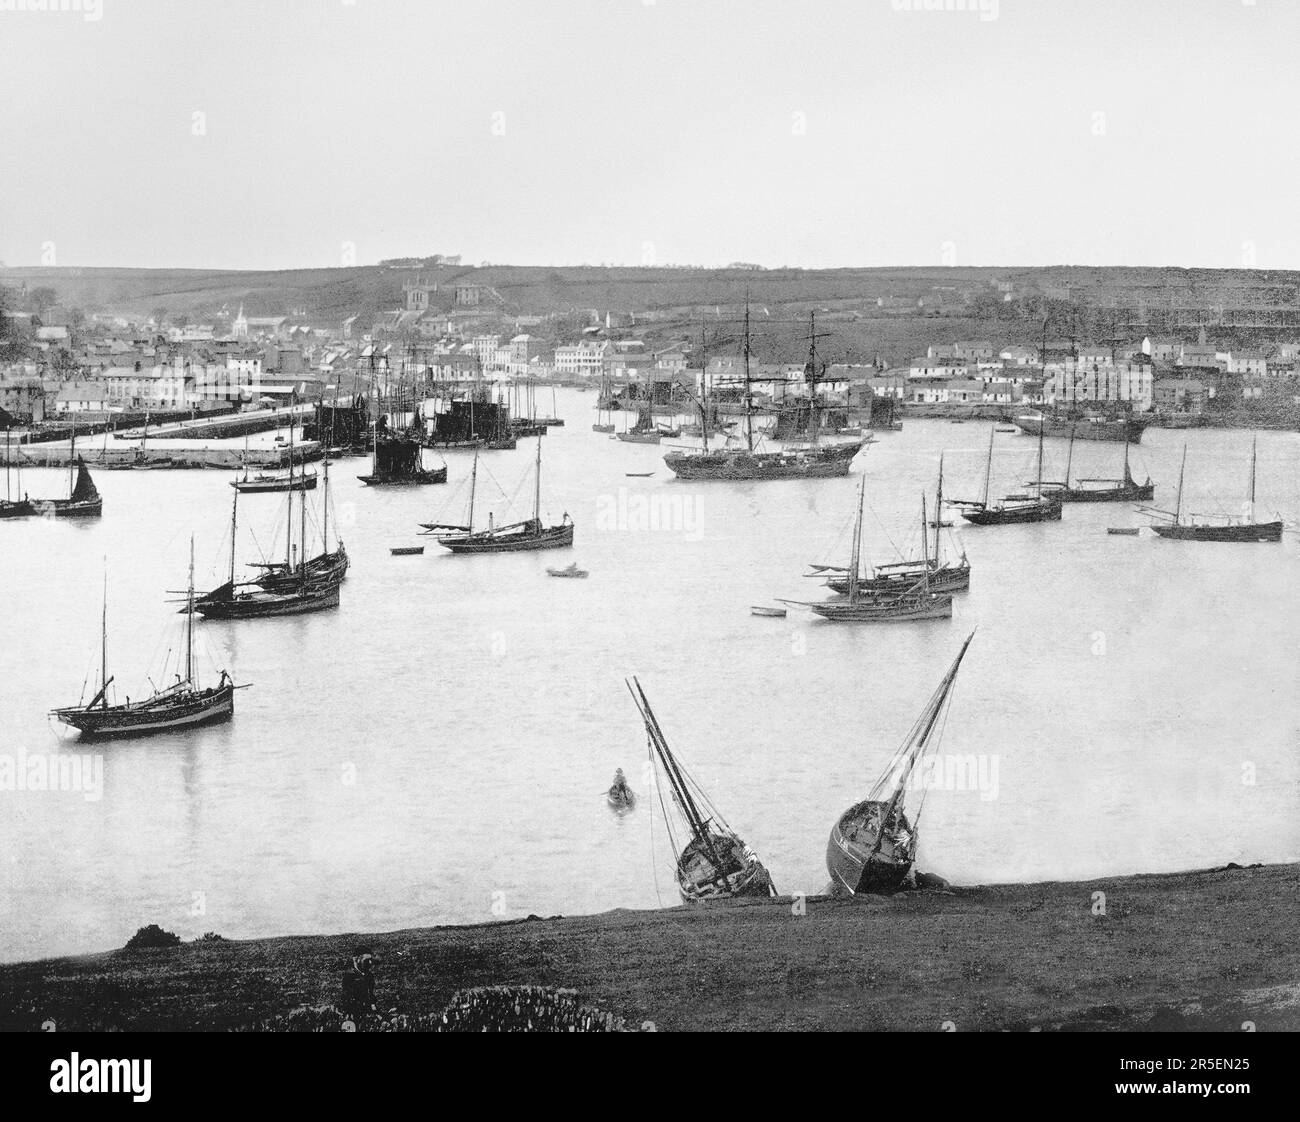 Una vista de finales del siglo 19th de la copiosa navegación en el puerto  en Kinsale, un puerto histórico y pueblo pesquero en el condado de Cork,  Irlanda, el lugar de varias